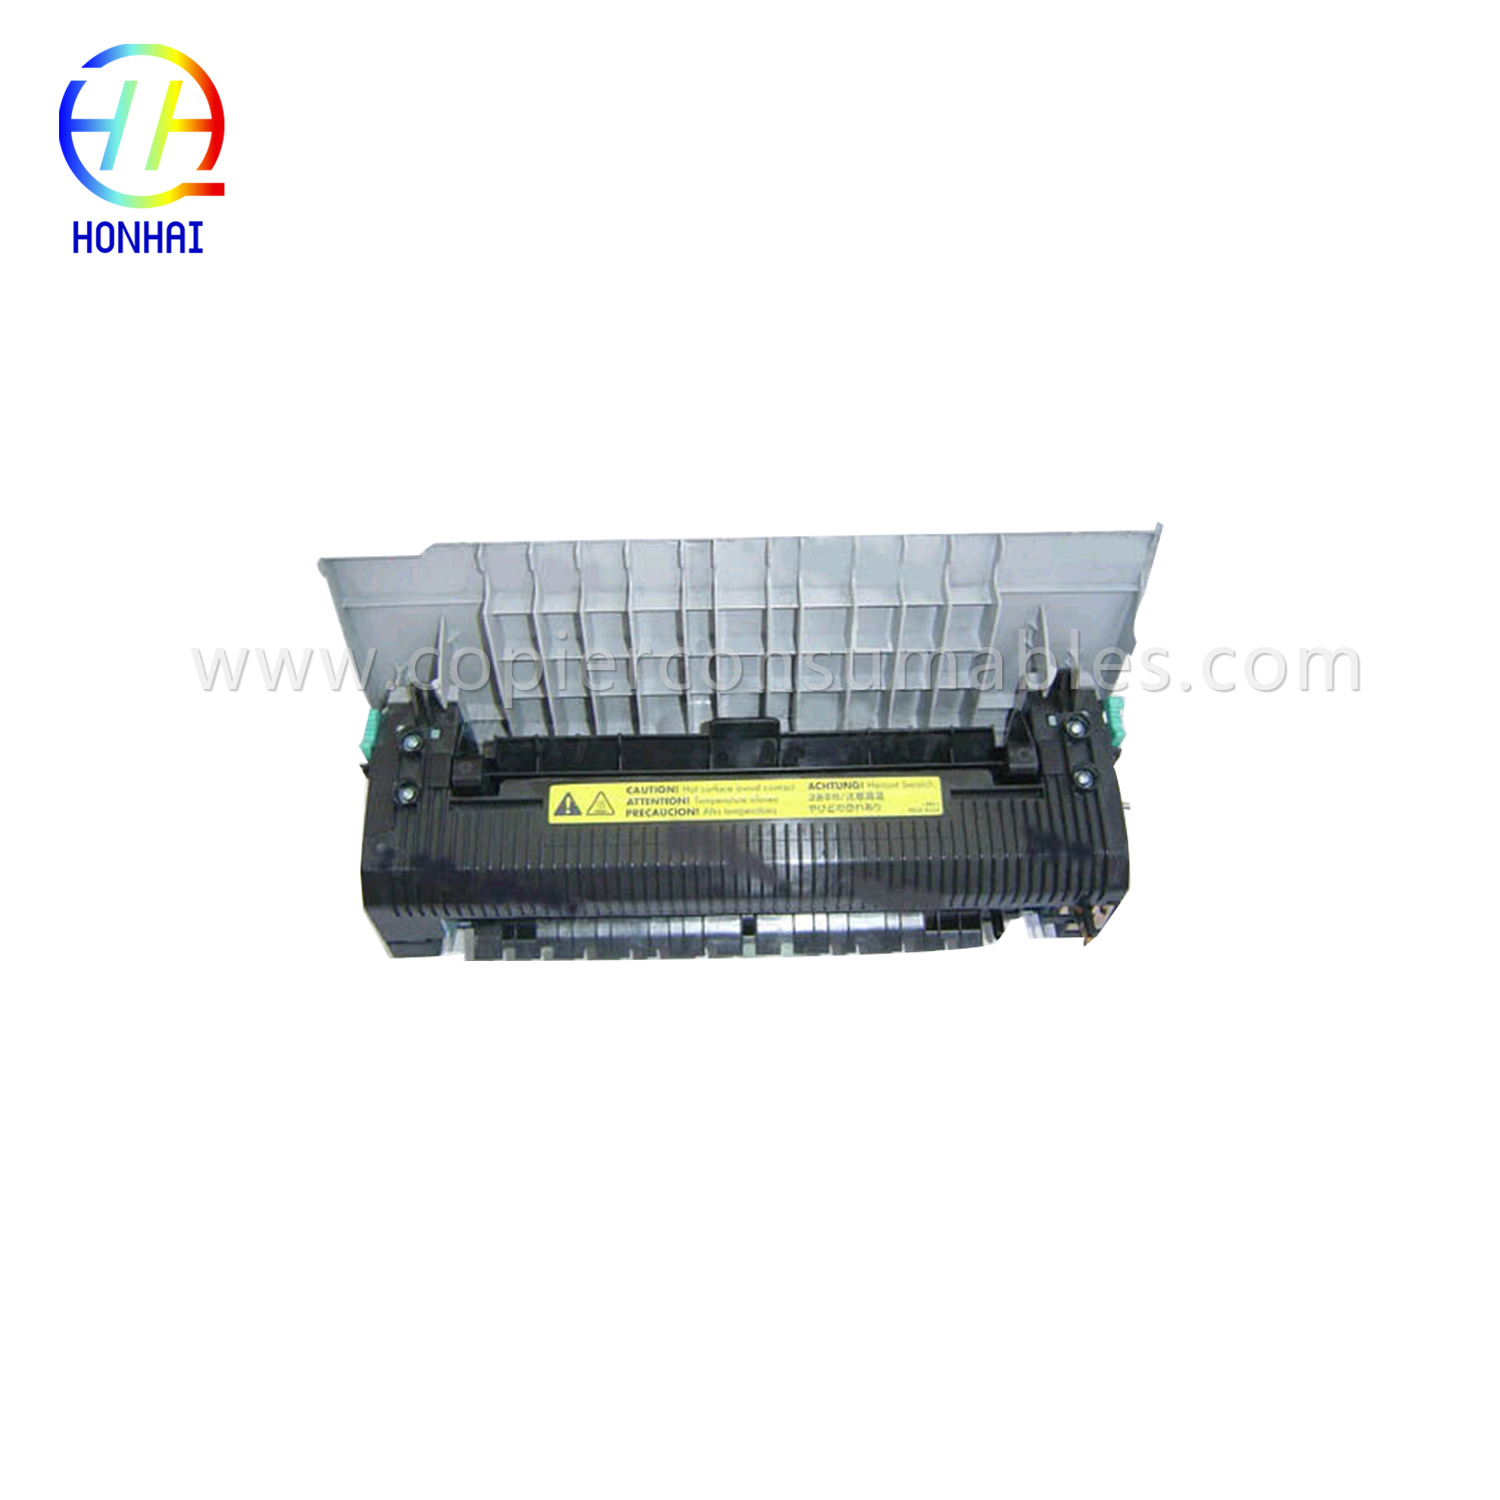 Fuser Unit fyrir HP Color LaserJet 2550 2550L 2550ln 2550n (RG5-7572-110Cn)